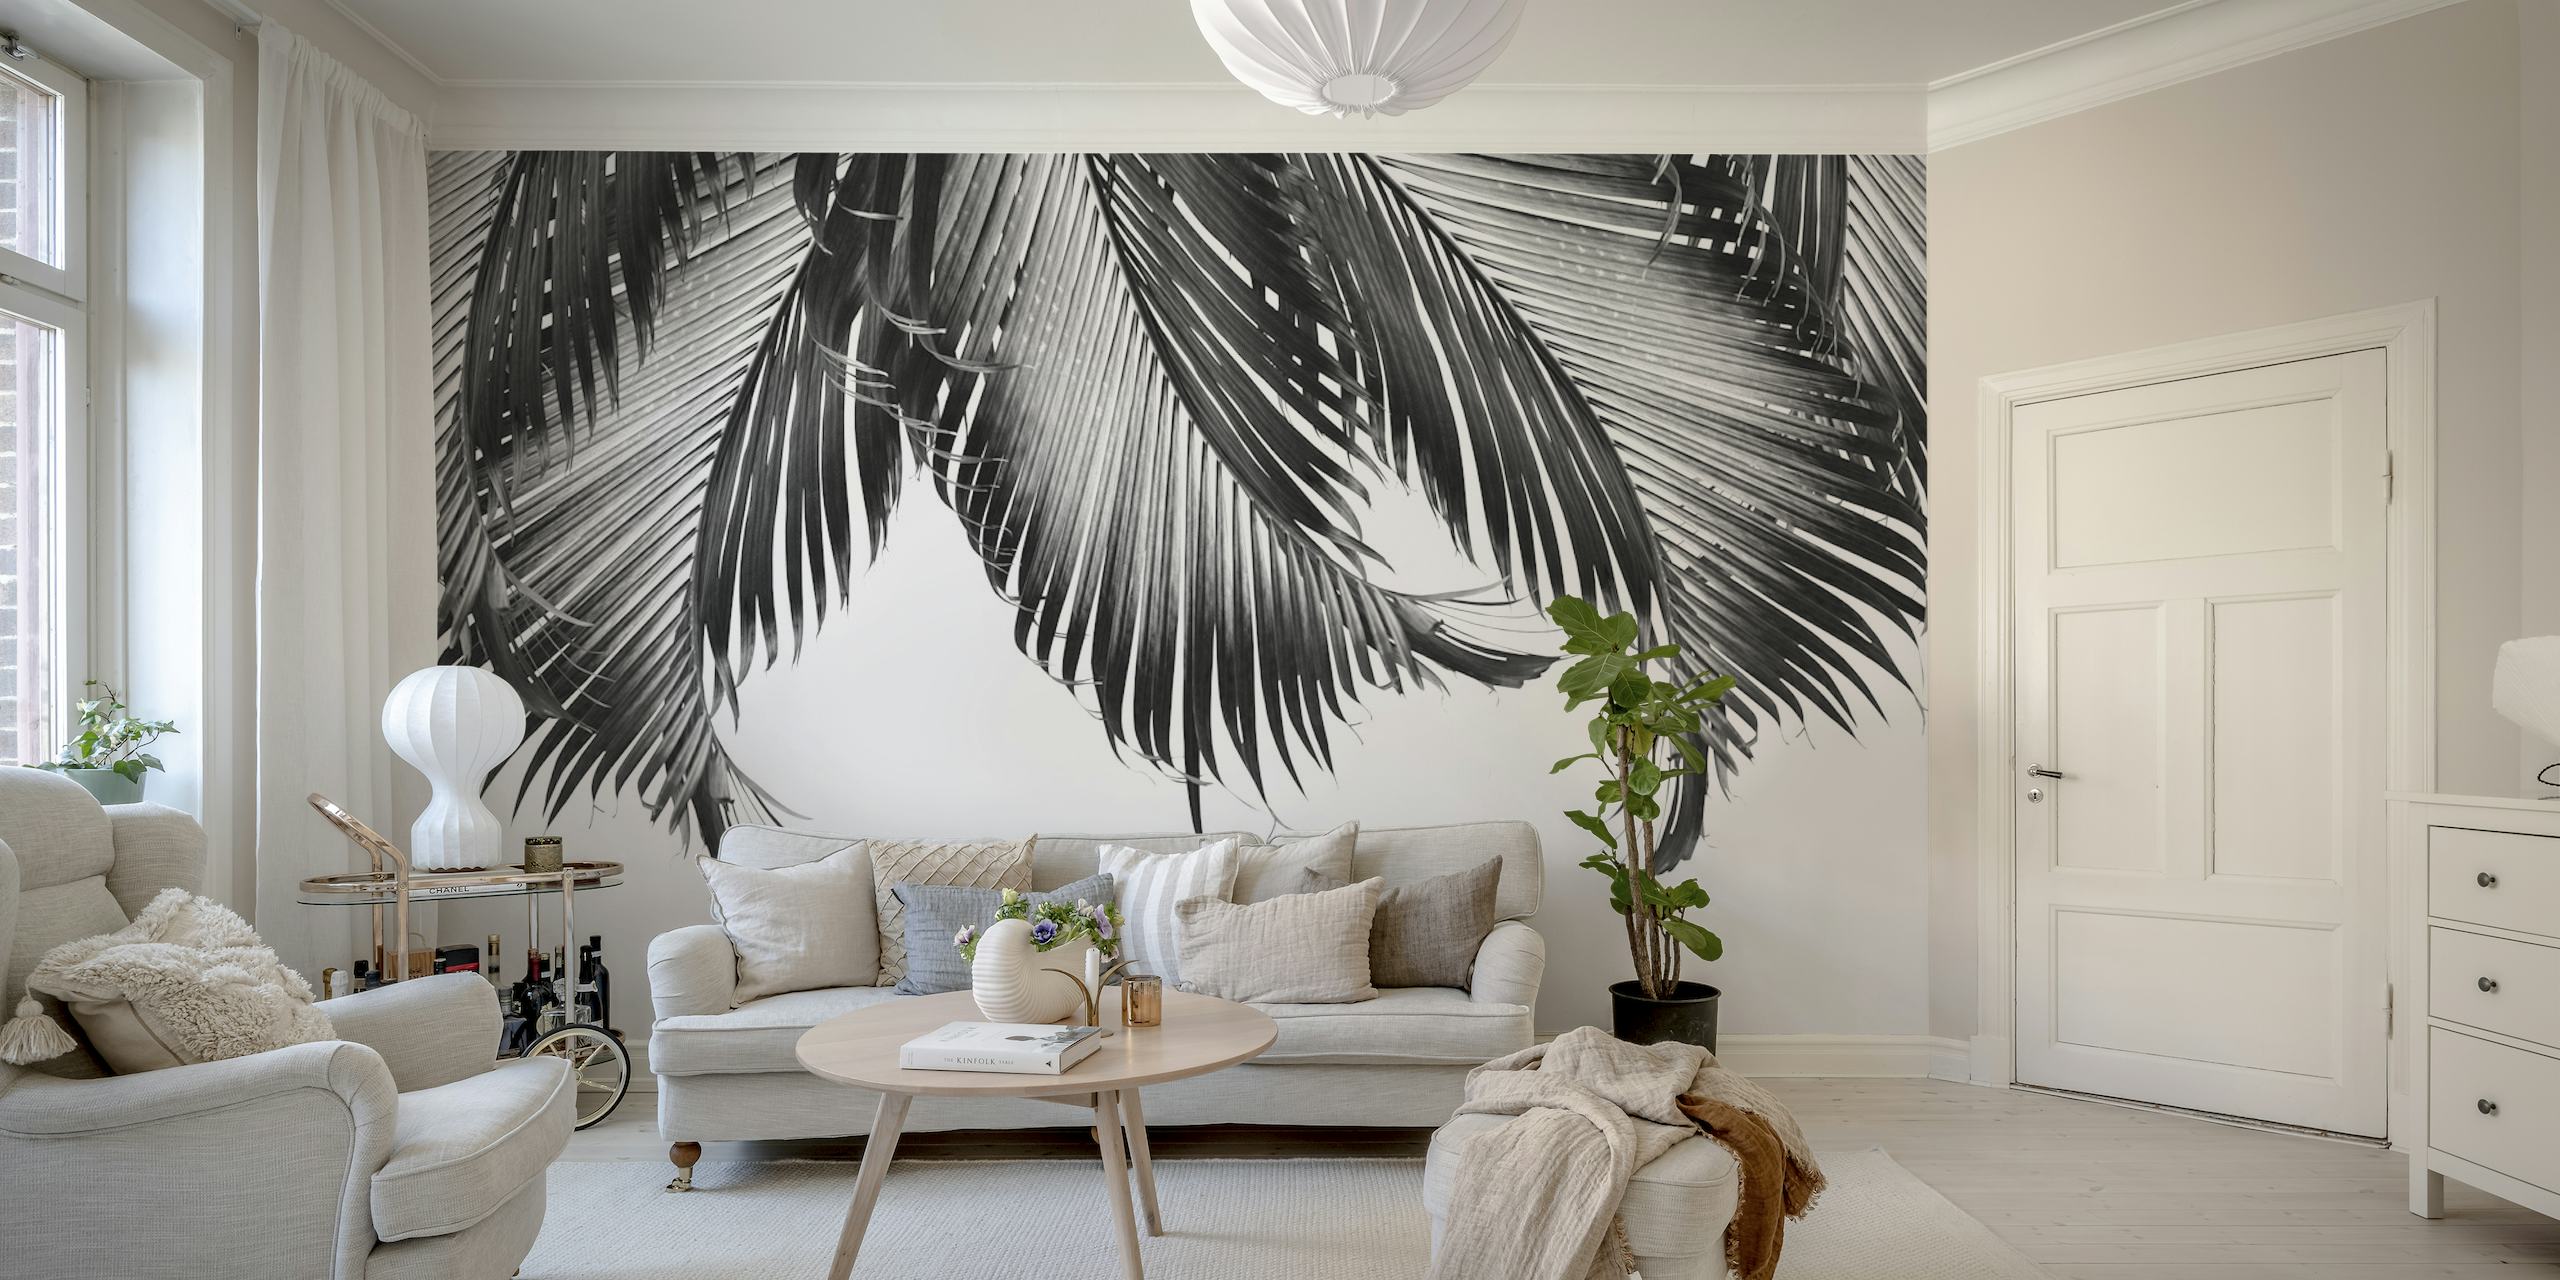 Fotomural vinílico de parede com produtode folha de palmeira em preto e branco para decoração de interiores moderna